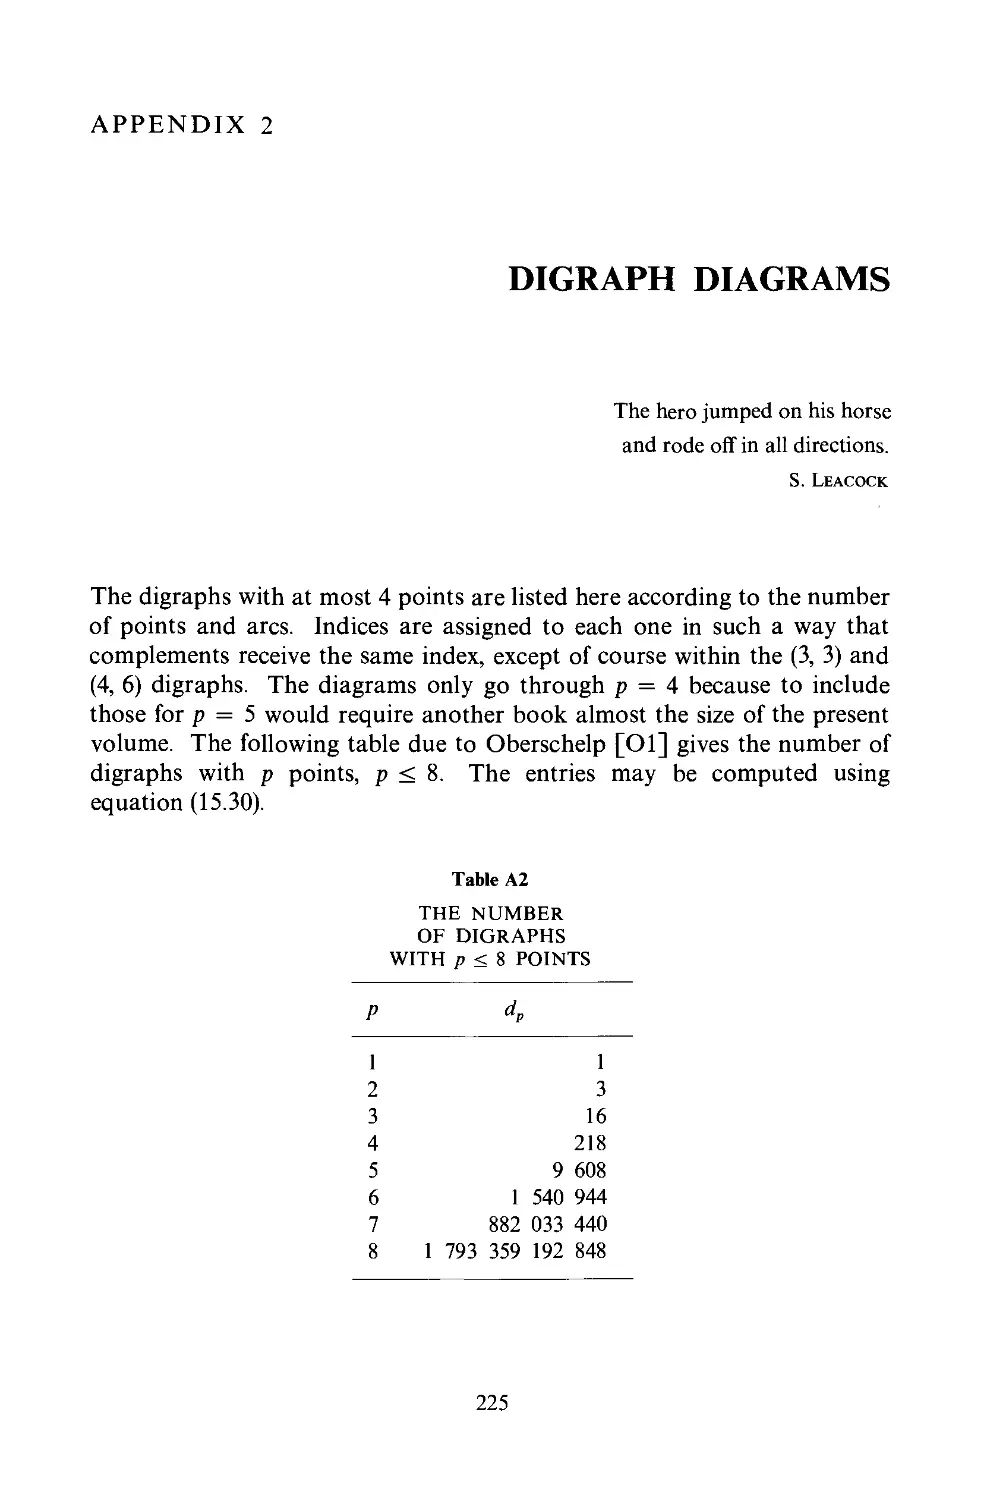 Appendix II Digraph Diagrams